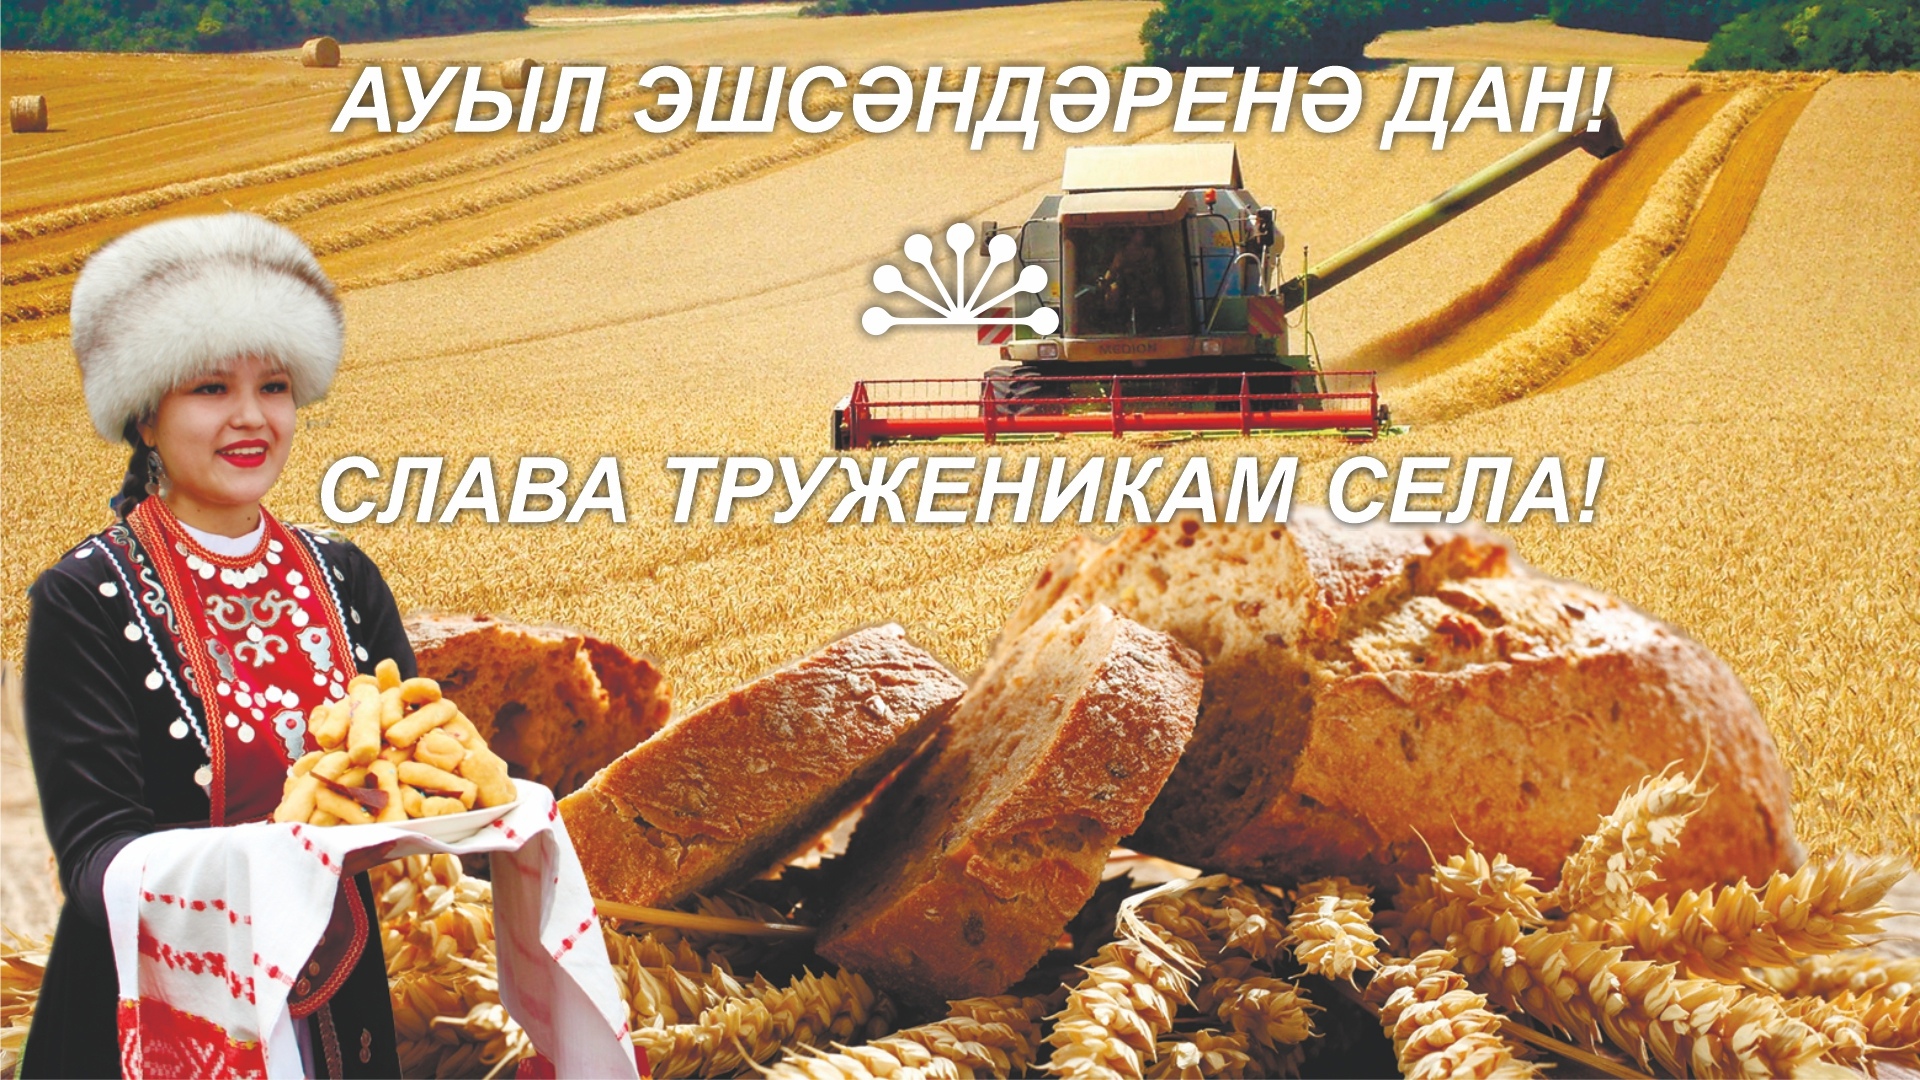 Тружеников 10. Слава труженикам сельского хозяйства.